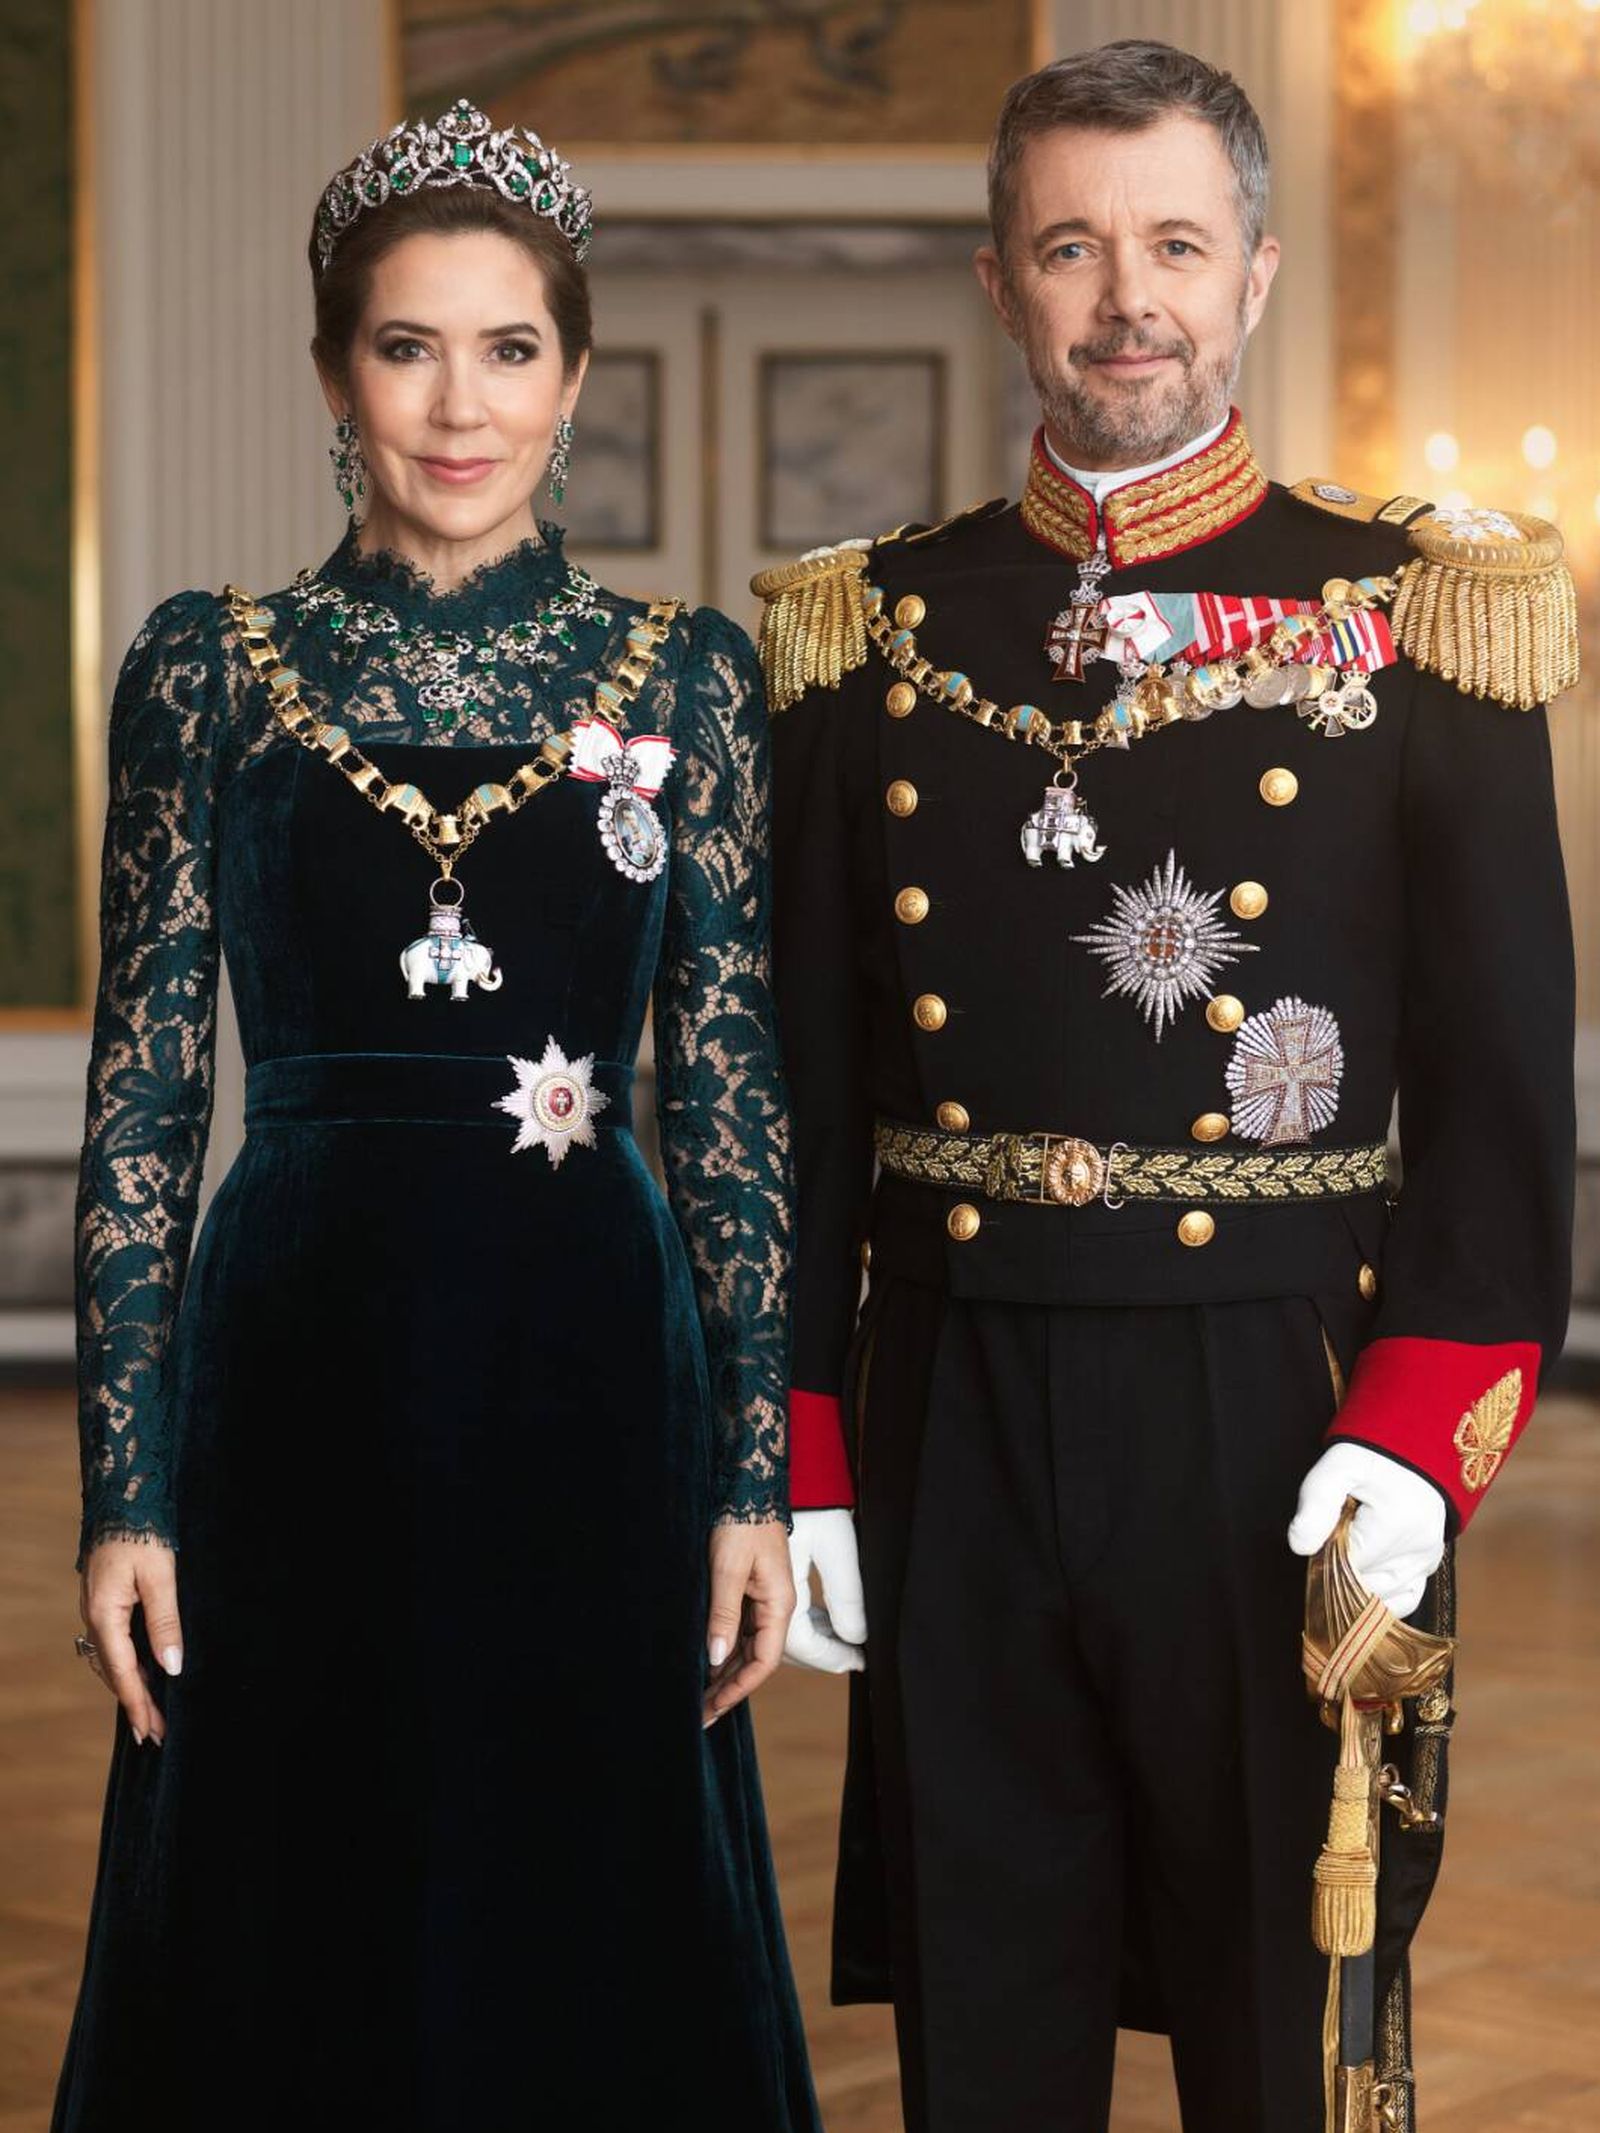 El retrato oficial de Federico y Mary objeto de rumores. (Casa Real de Dinamarca/Steen Evald)